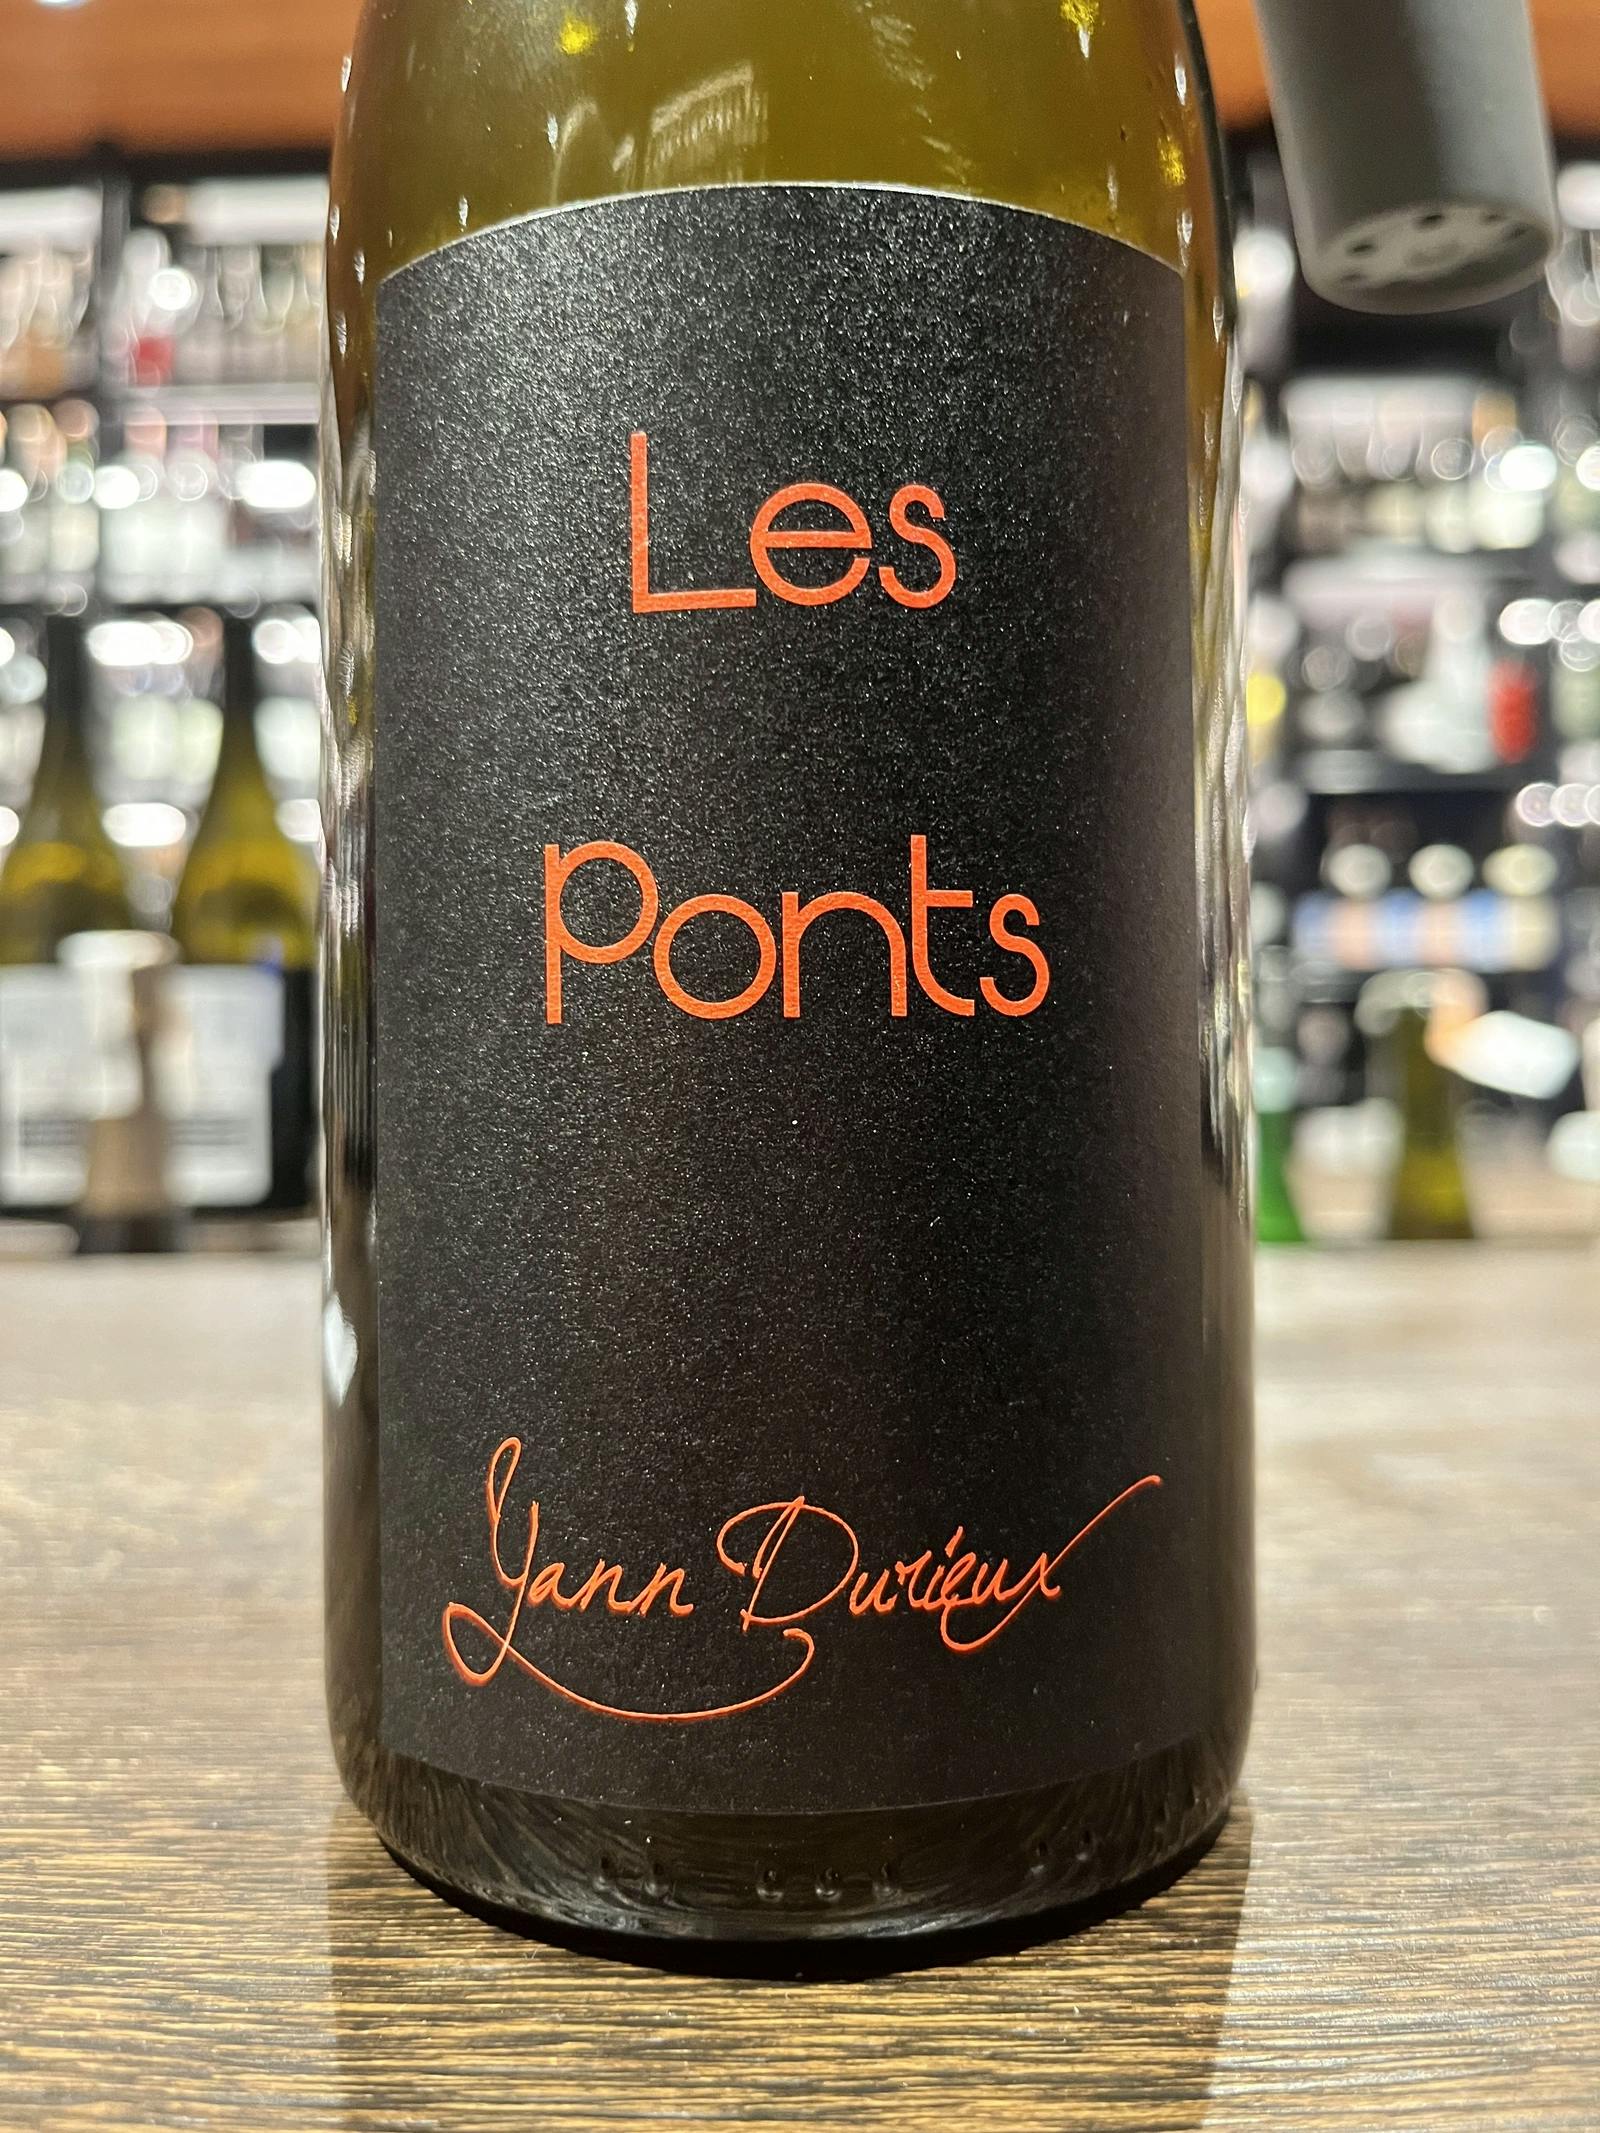 Yann Durieux Les Ponts 2018